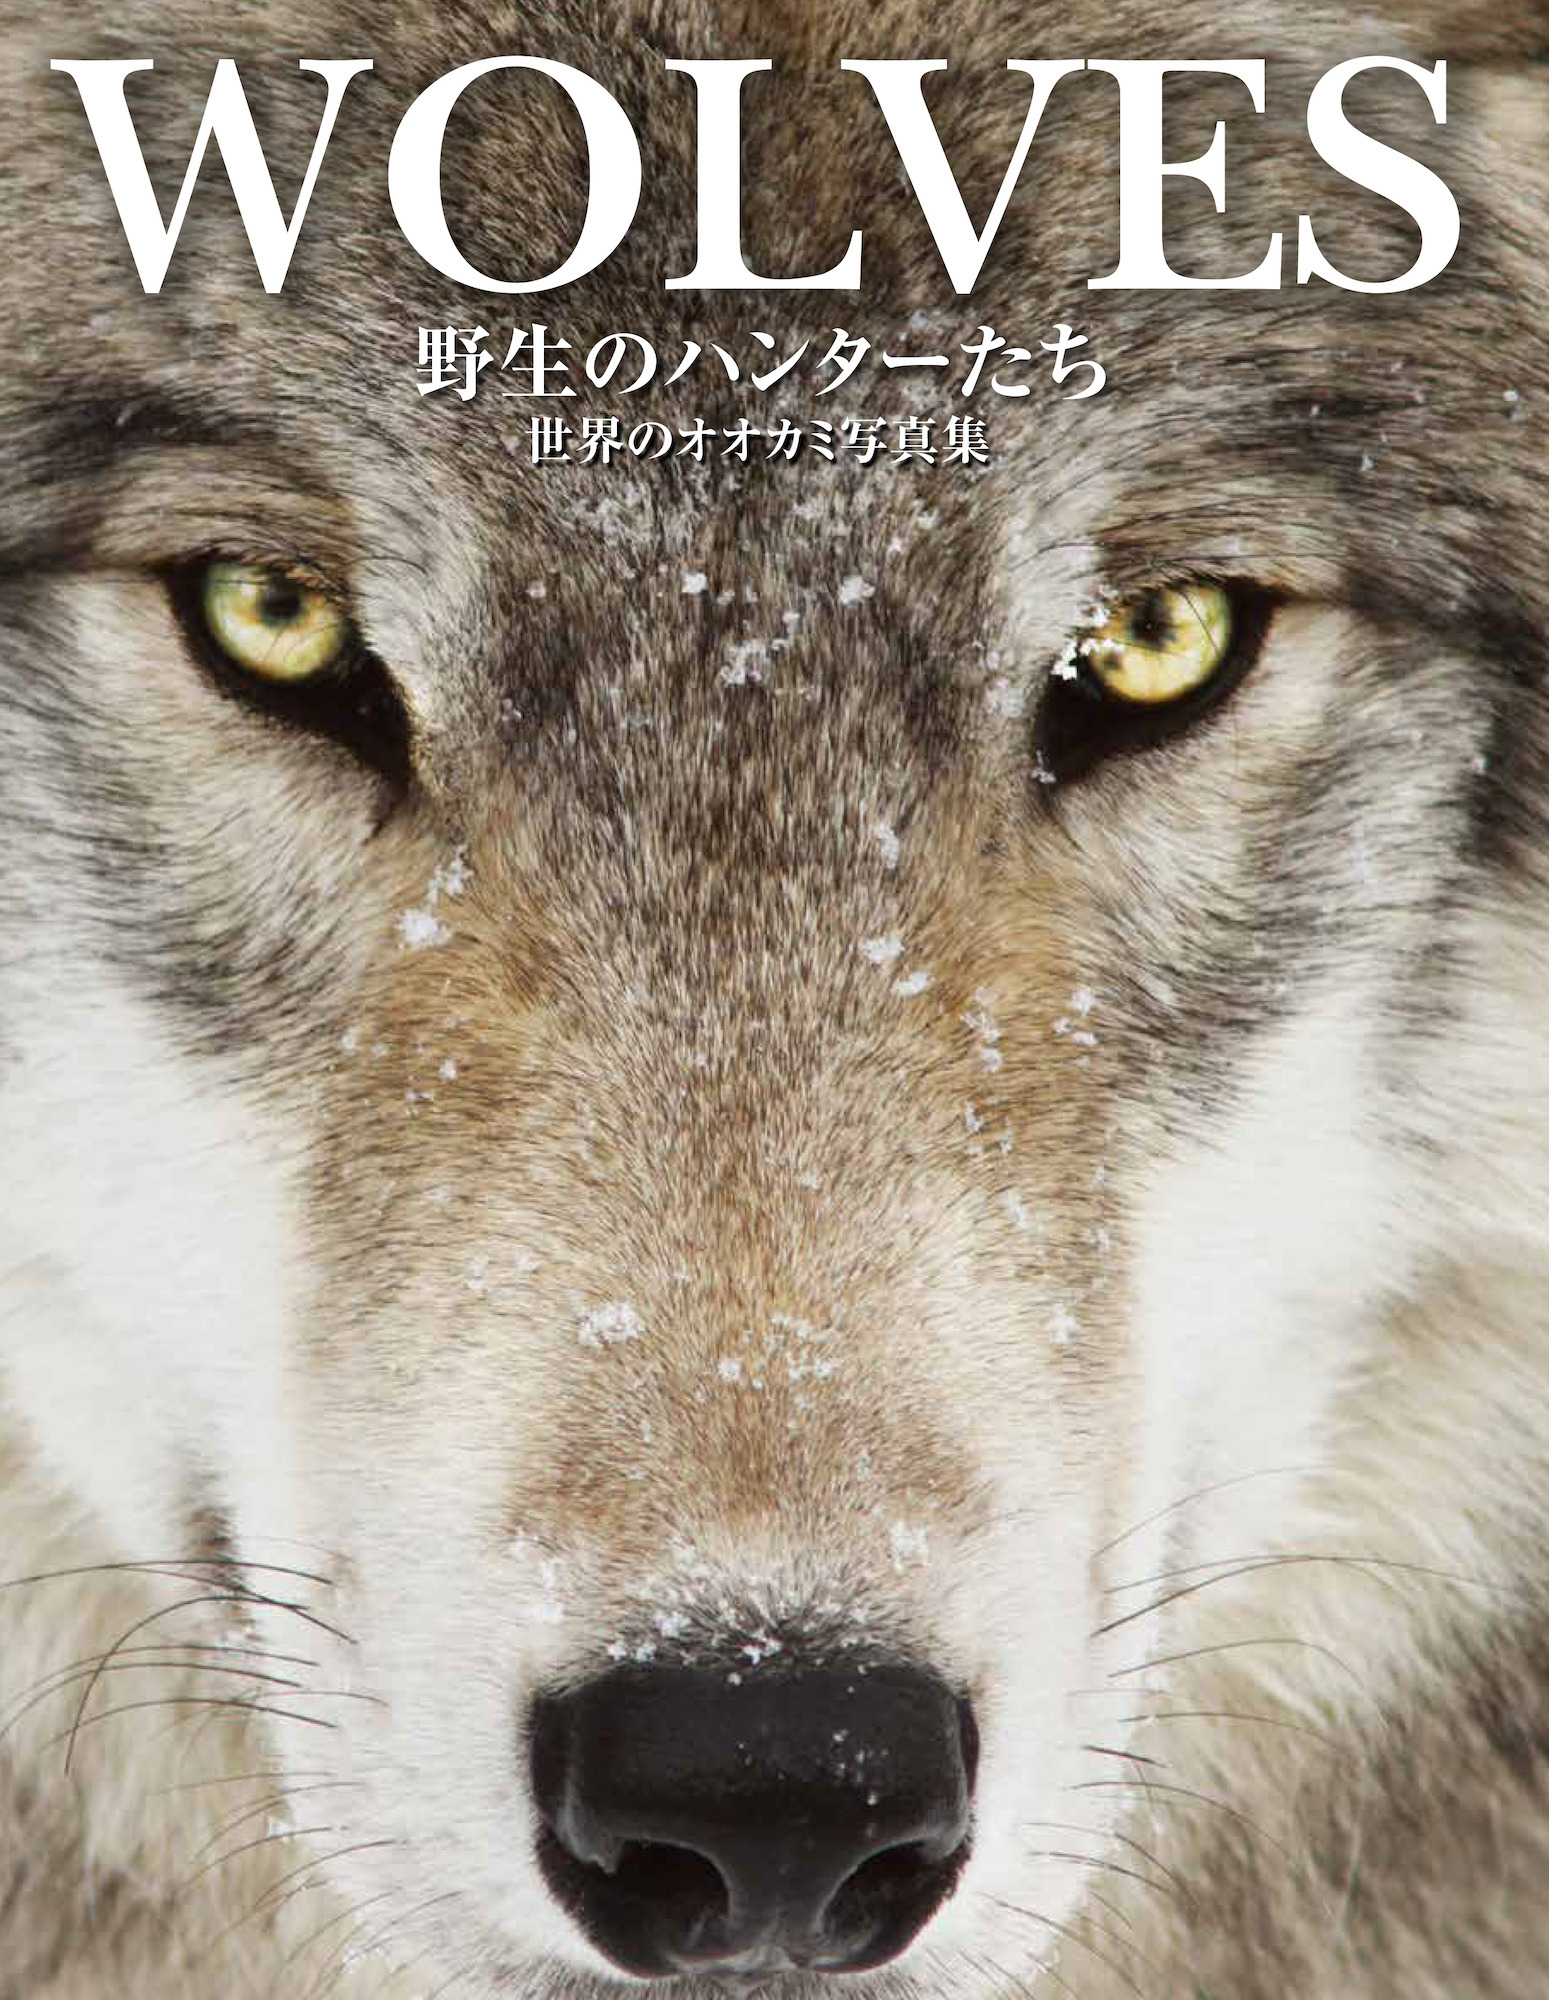 WOLVES野生のハンターたち 世界のオオカミ写真集』刊行…大自然の中で 